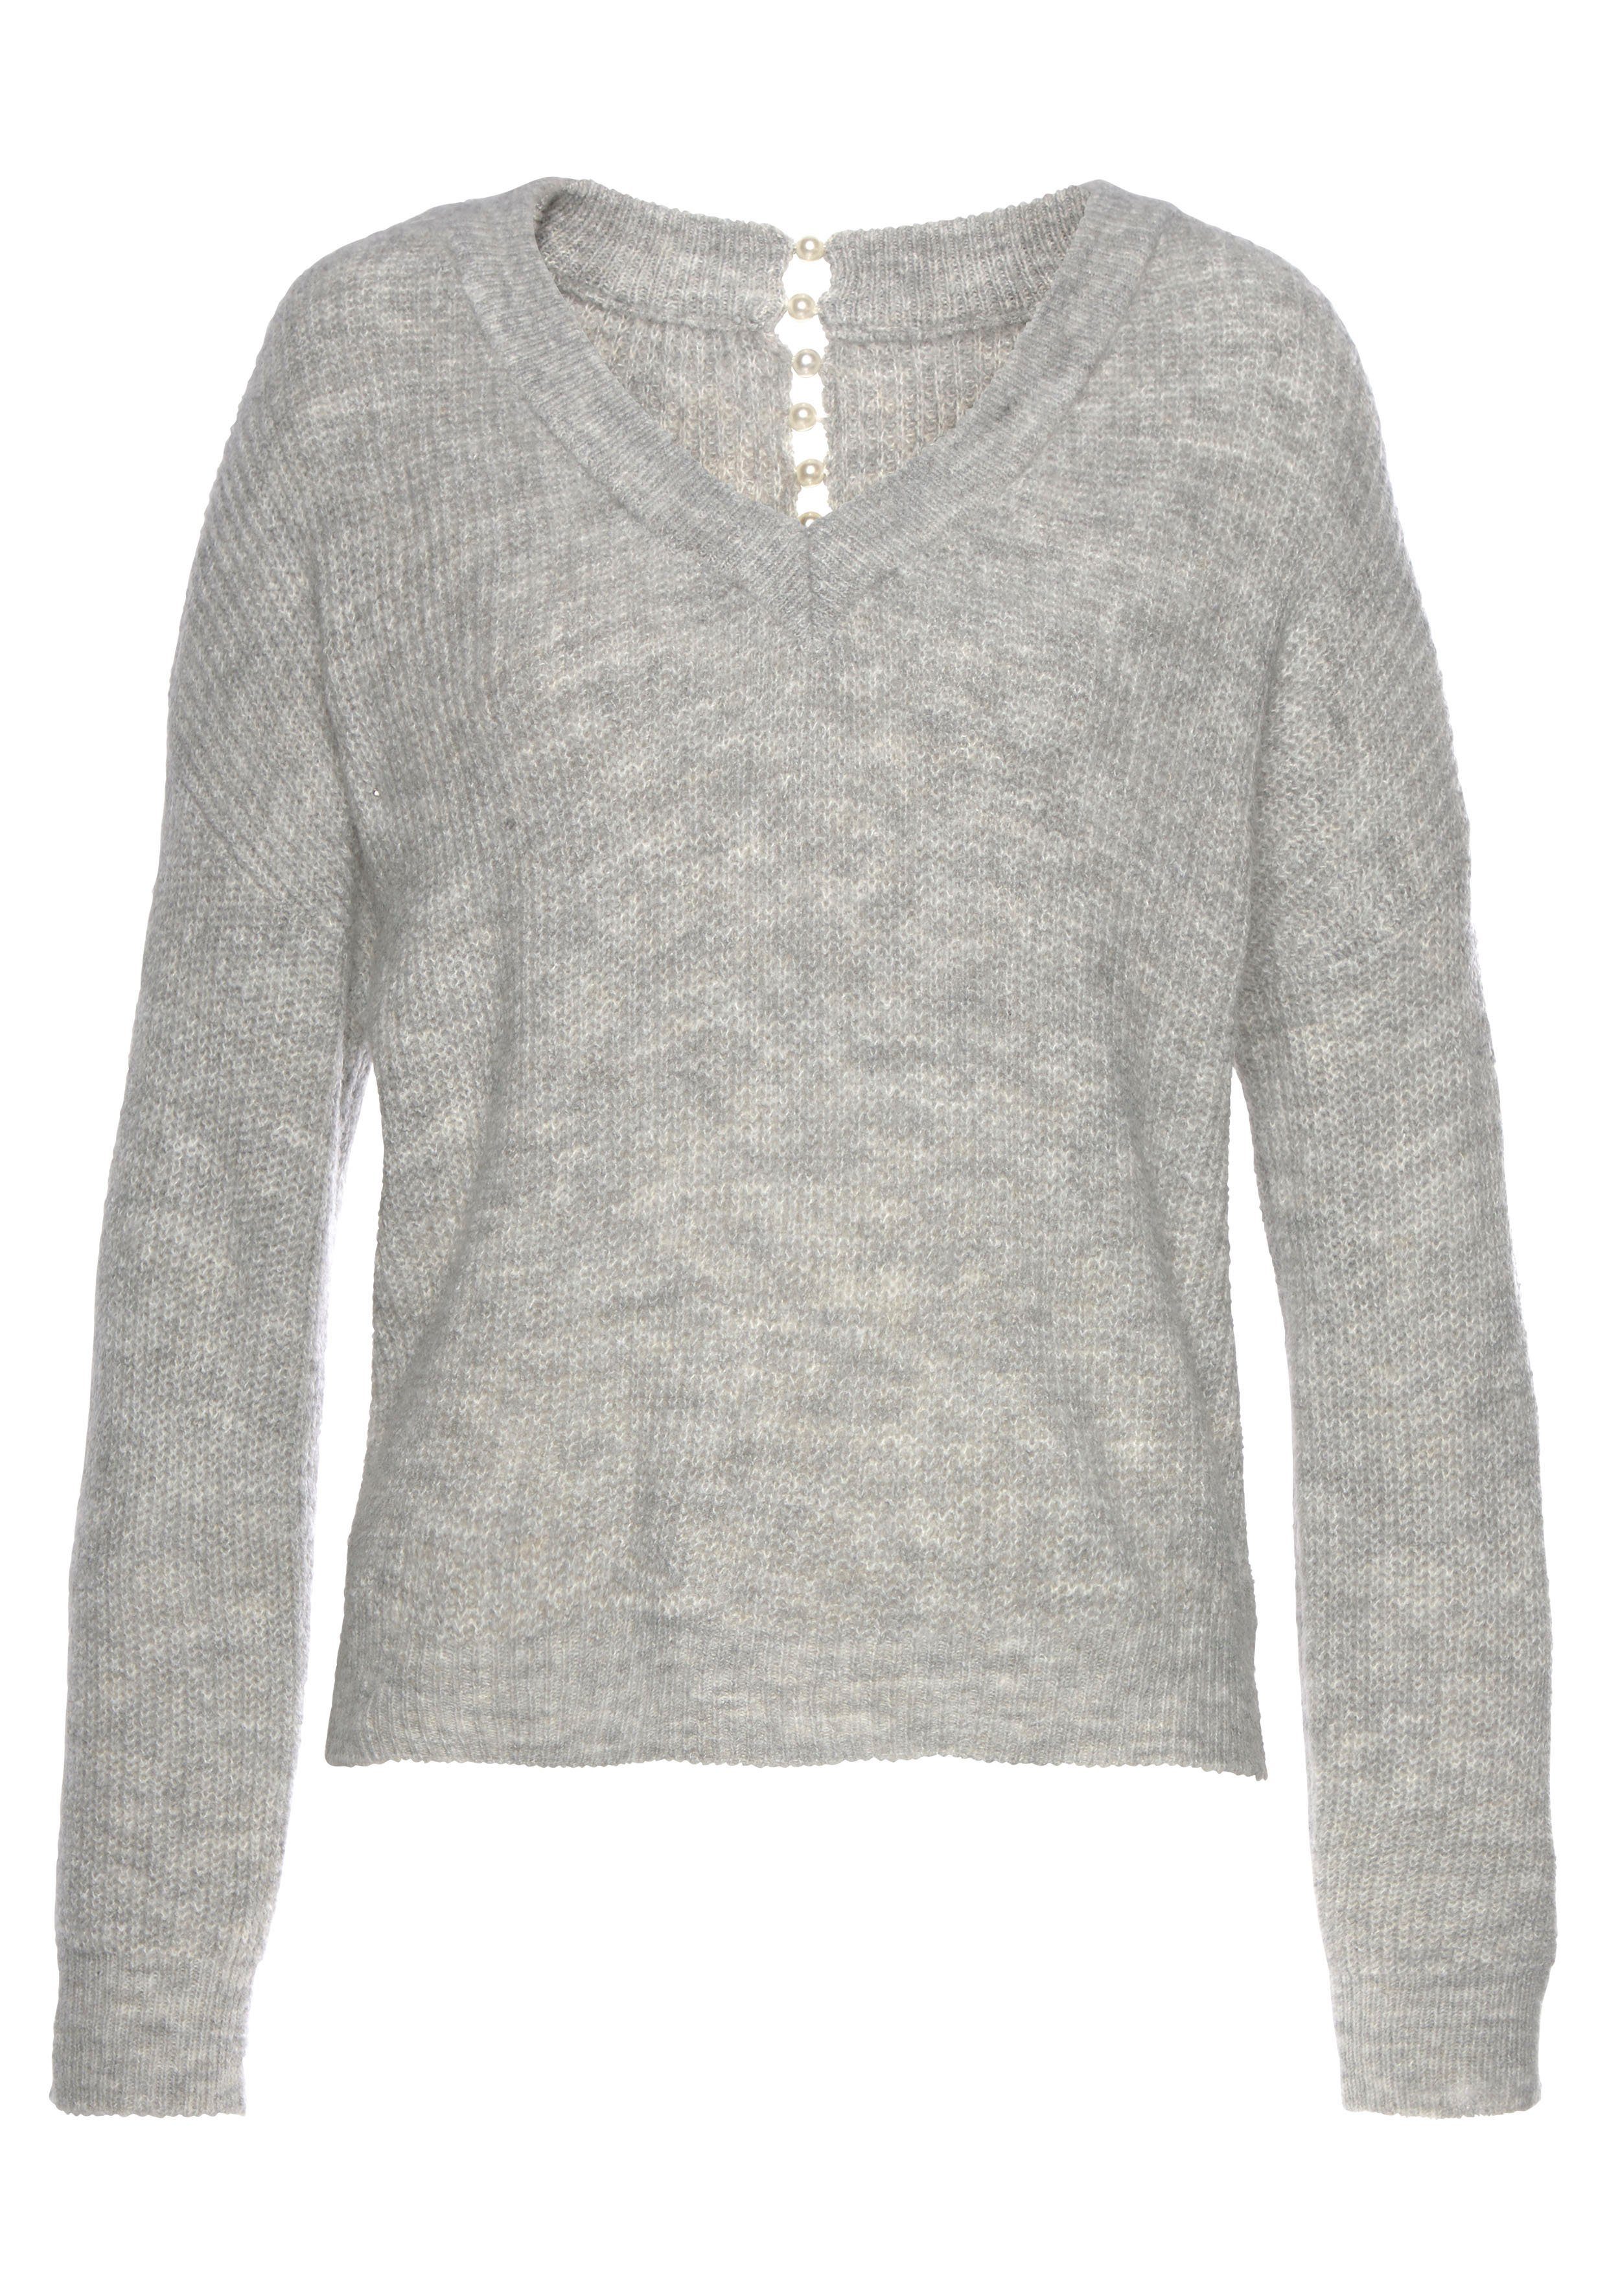 LASCANA V-Ausschnitt-Pullover mit Zierperlen Rücken grau-meliert im